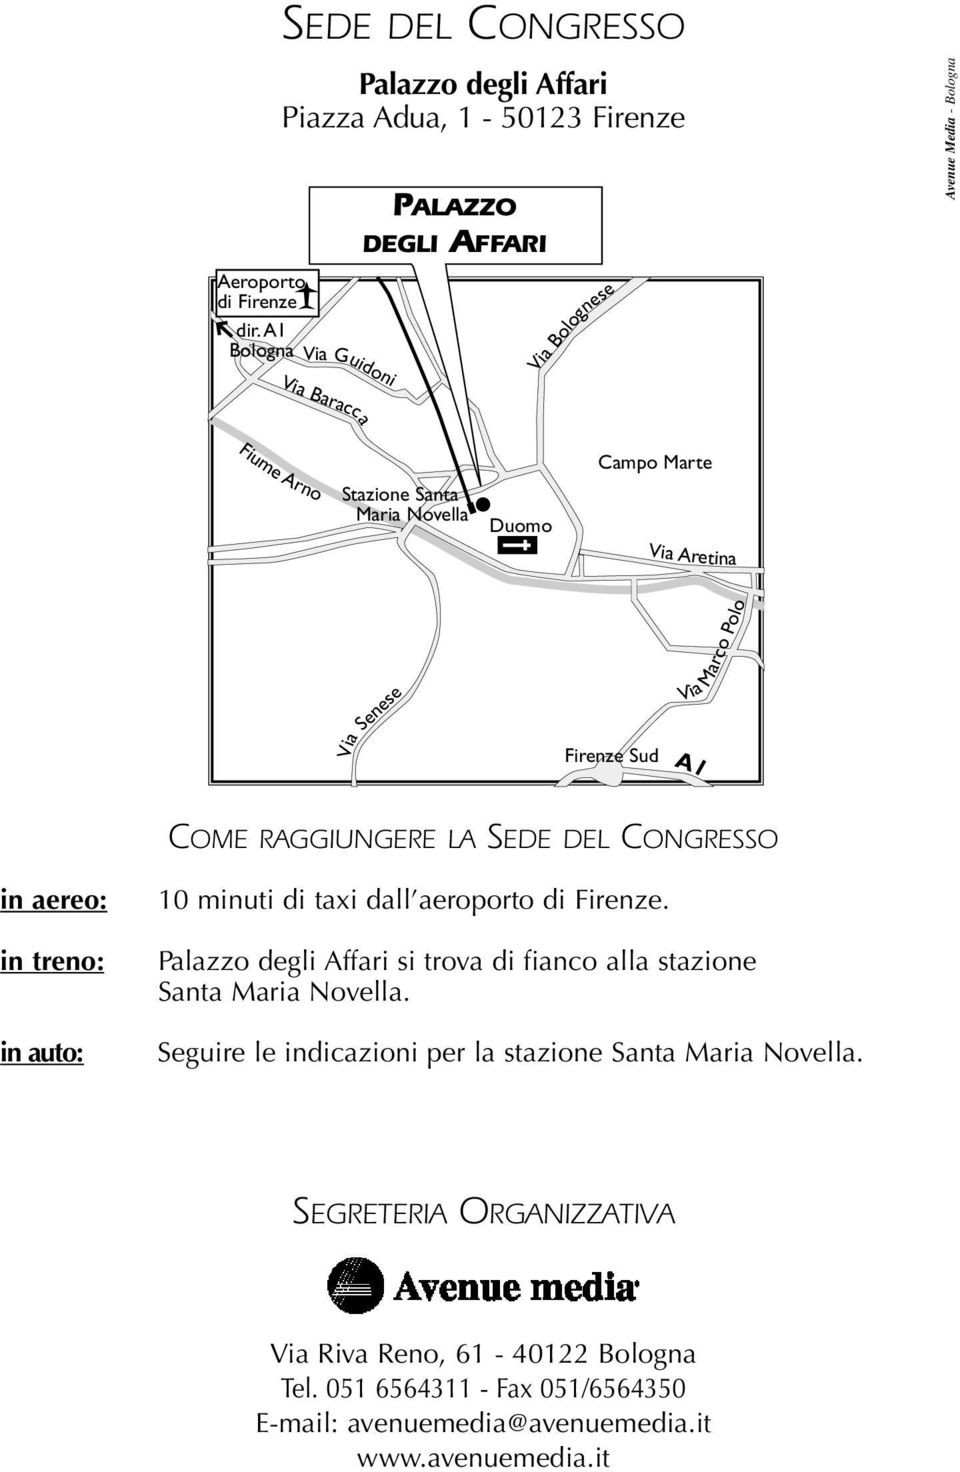 Maria Novella Duomo Campo Marte Via Aretina Via Senese Firenze Sud Via Marco Polo A1 COME RAGGIUNGERE LA SEDE DEL CONGRESSO in aereo: in treno: in auto: 10 minuti di taxi